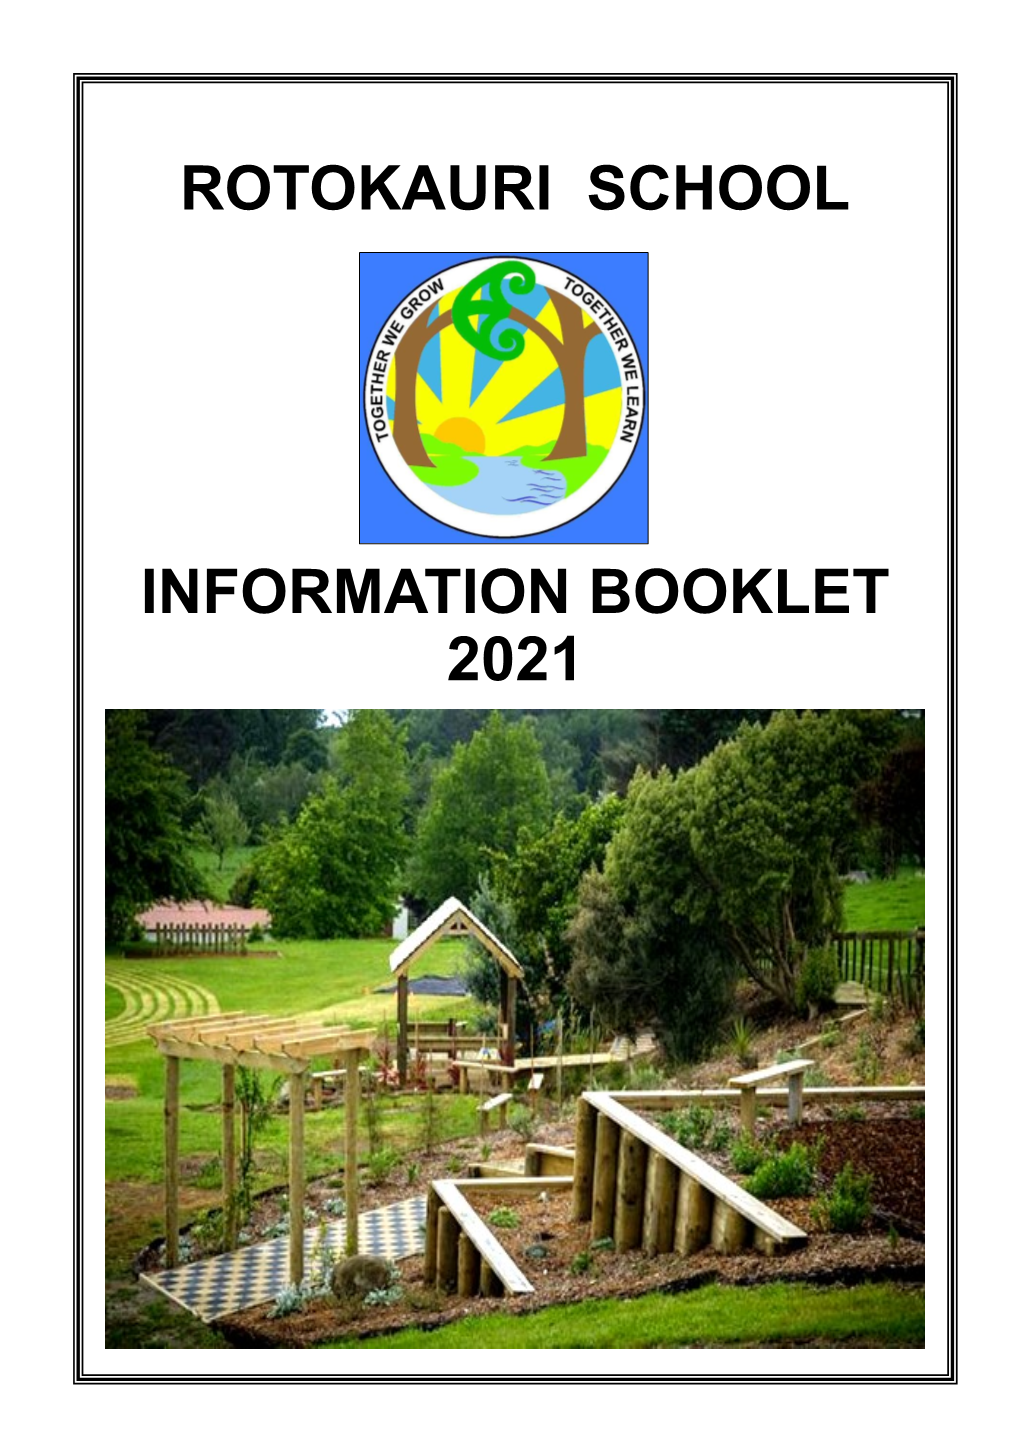 Rotokauri School Information Booklet 2021